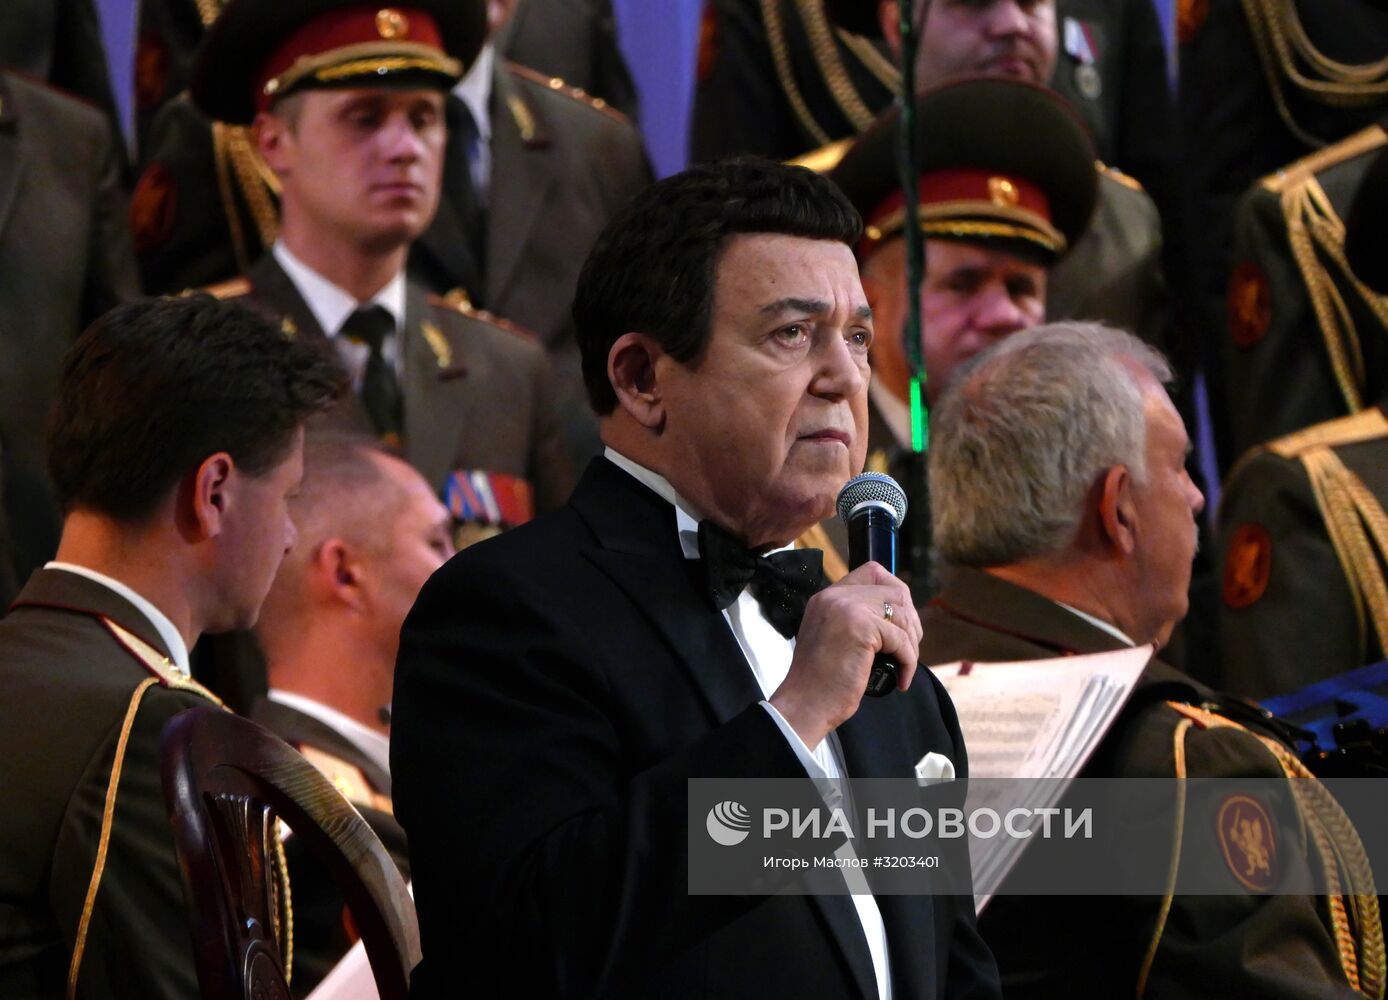 Концерт, посвященный юбилею Иосифа Кобзона, в Донецке